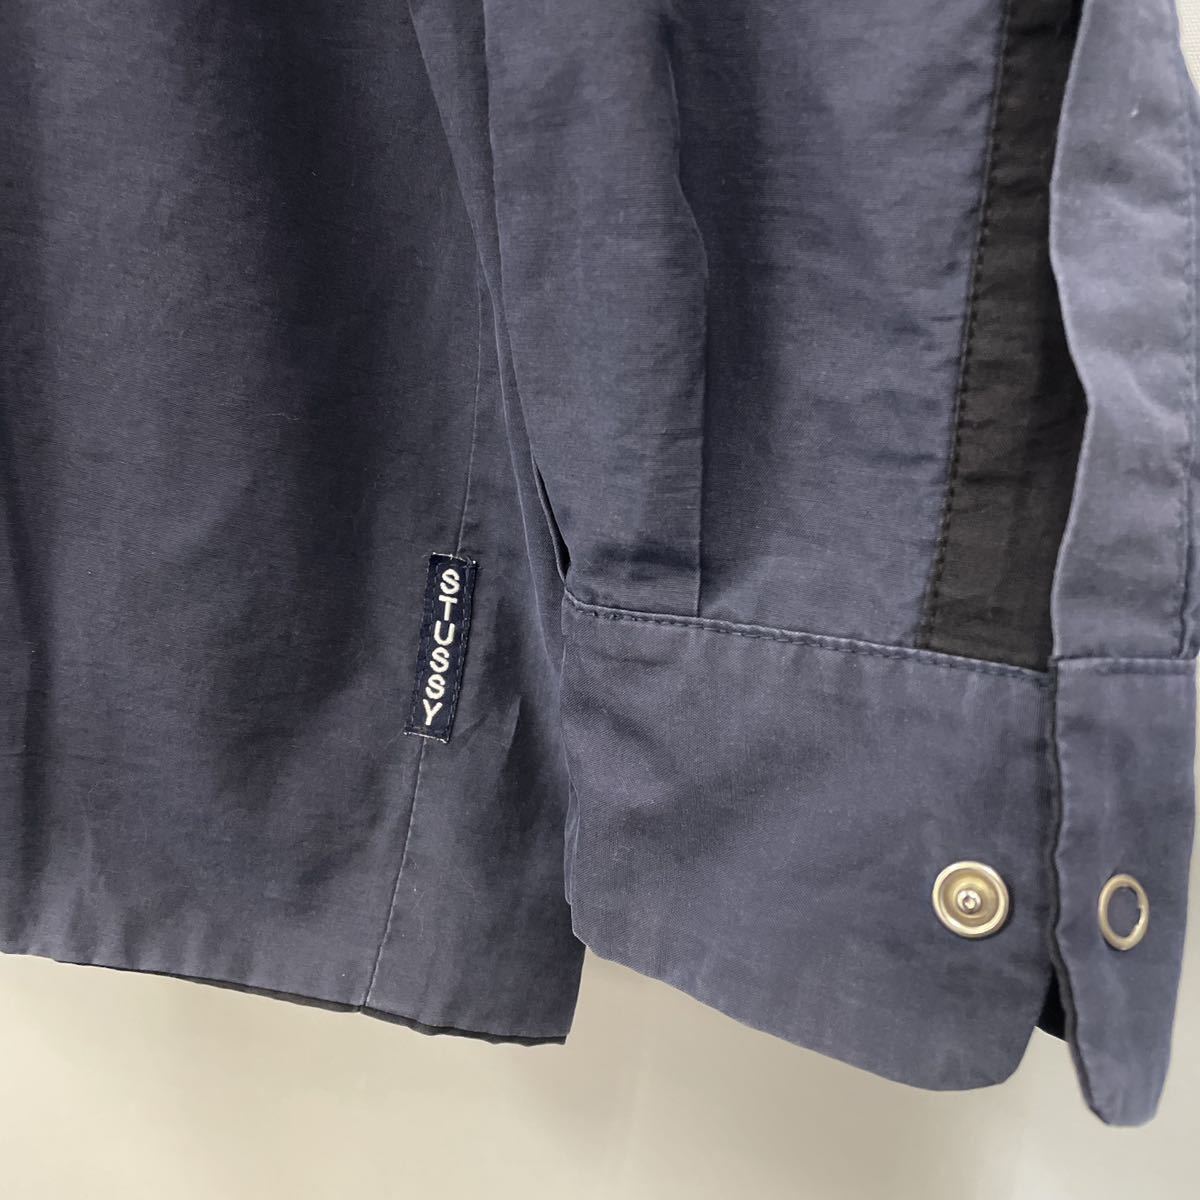 90s00s STUSSY ステューシー USA製 リバーシブル シャツジャケット ブラック×ブルー 2ポケット スナップボタン LARGE 珍品_画像7